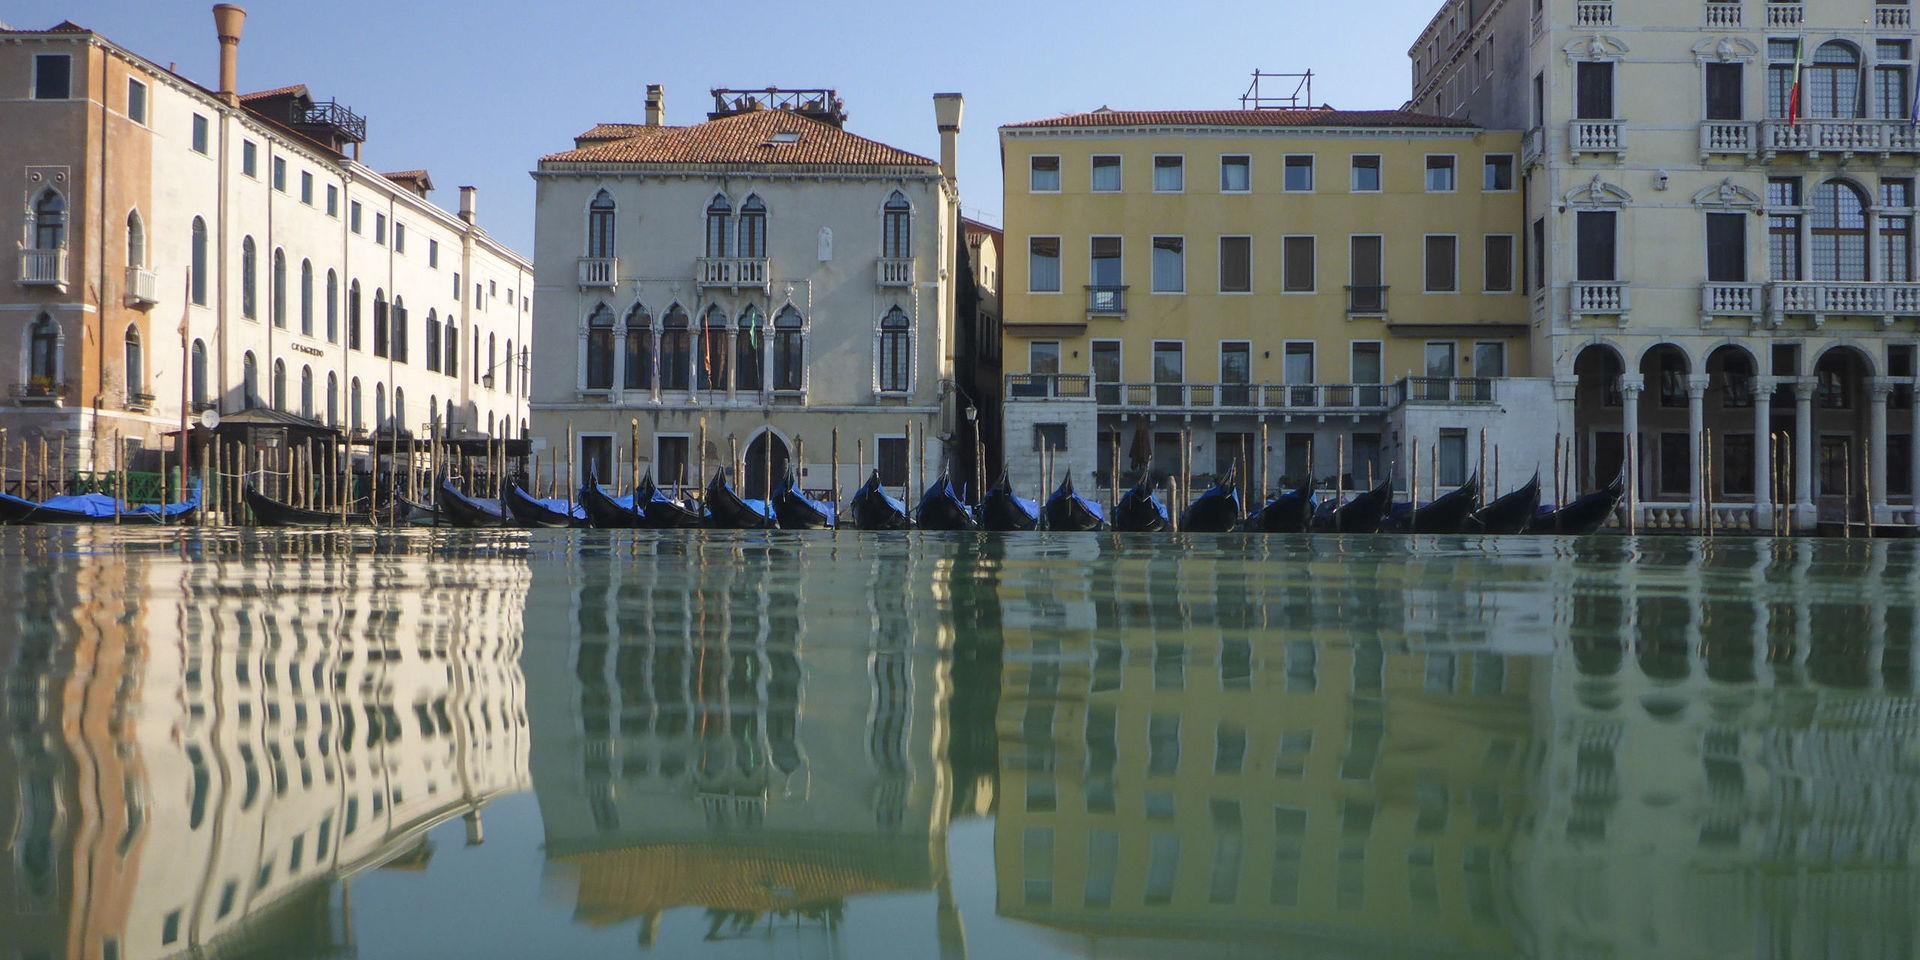 Tomma gondoler i Venedig i Italien.